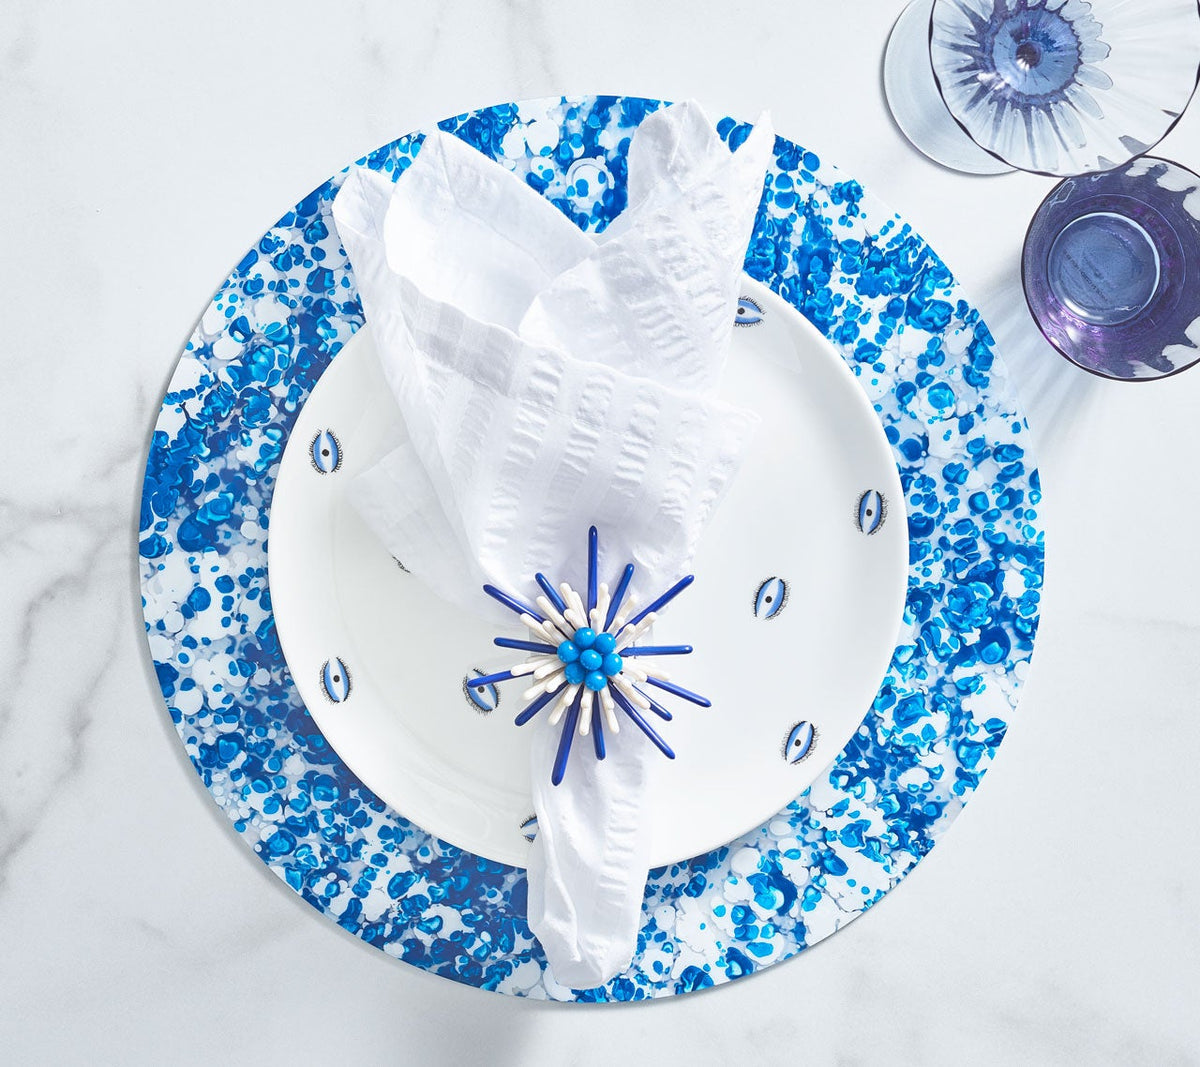 Kim Seybert Luxury Splash Placemat in White & Blue